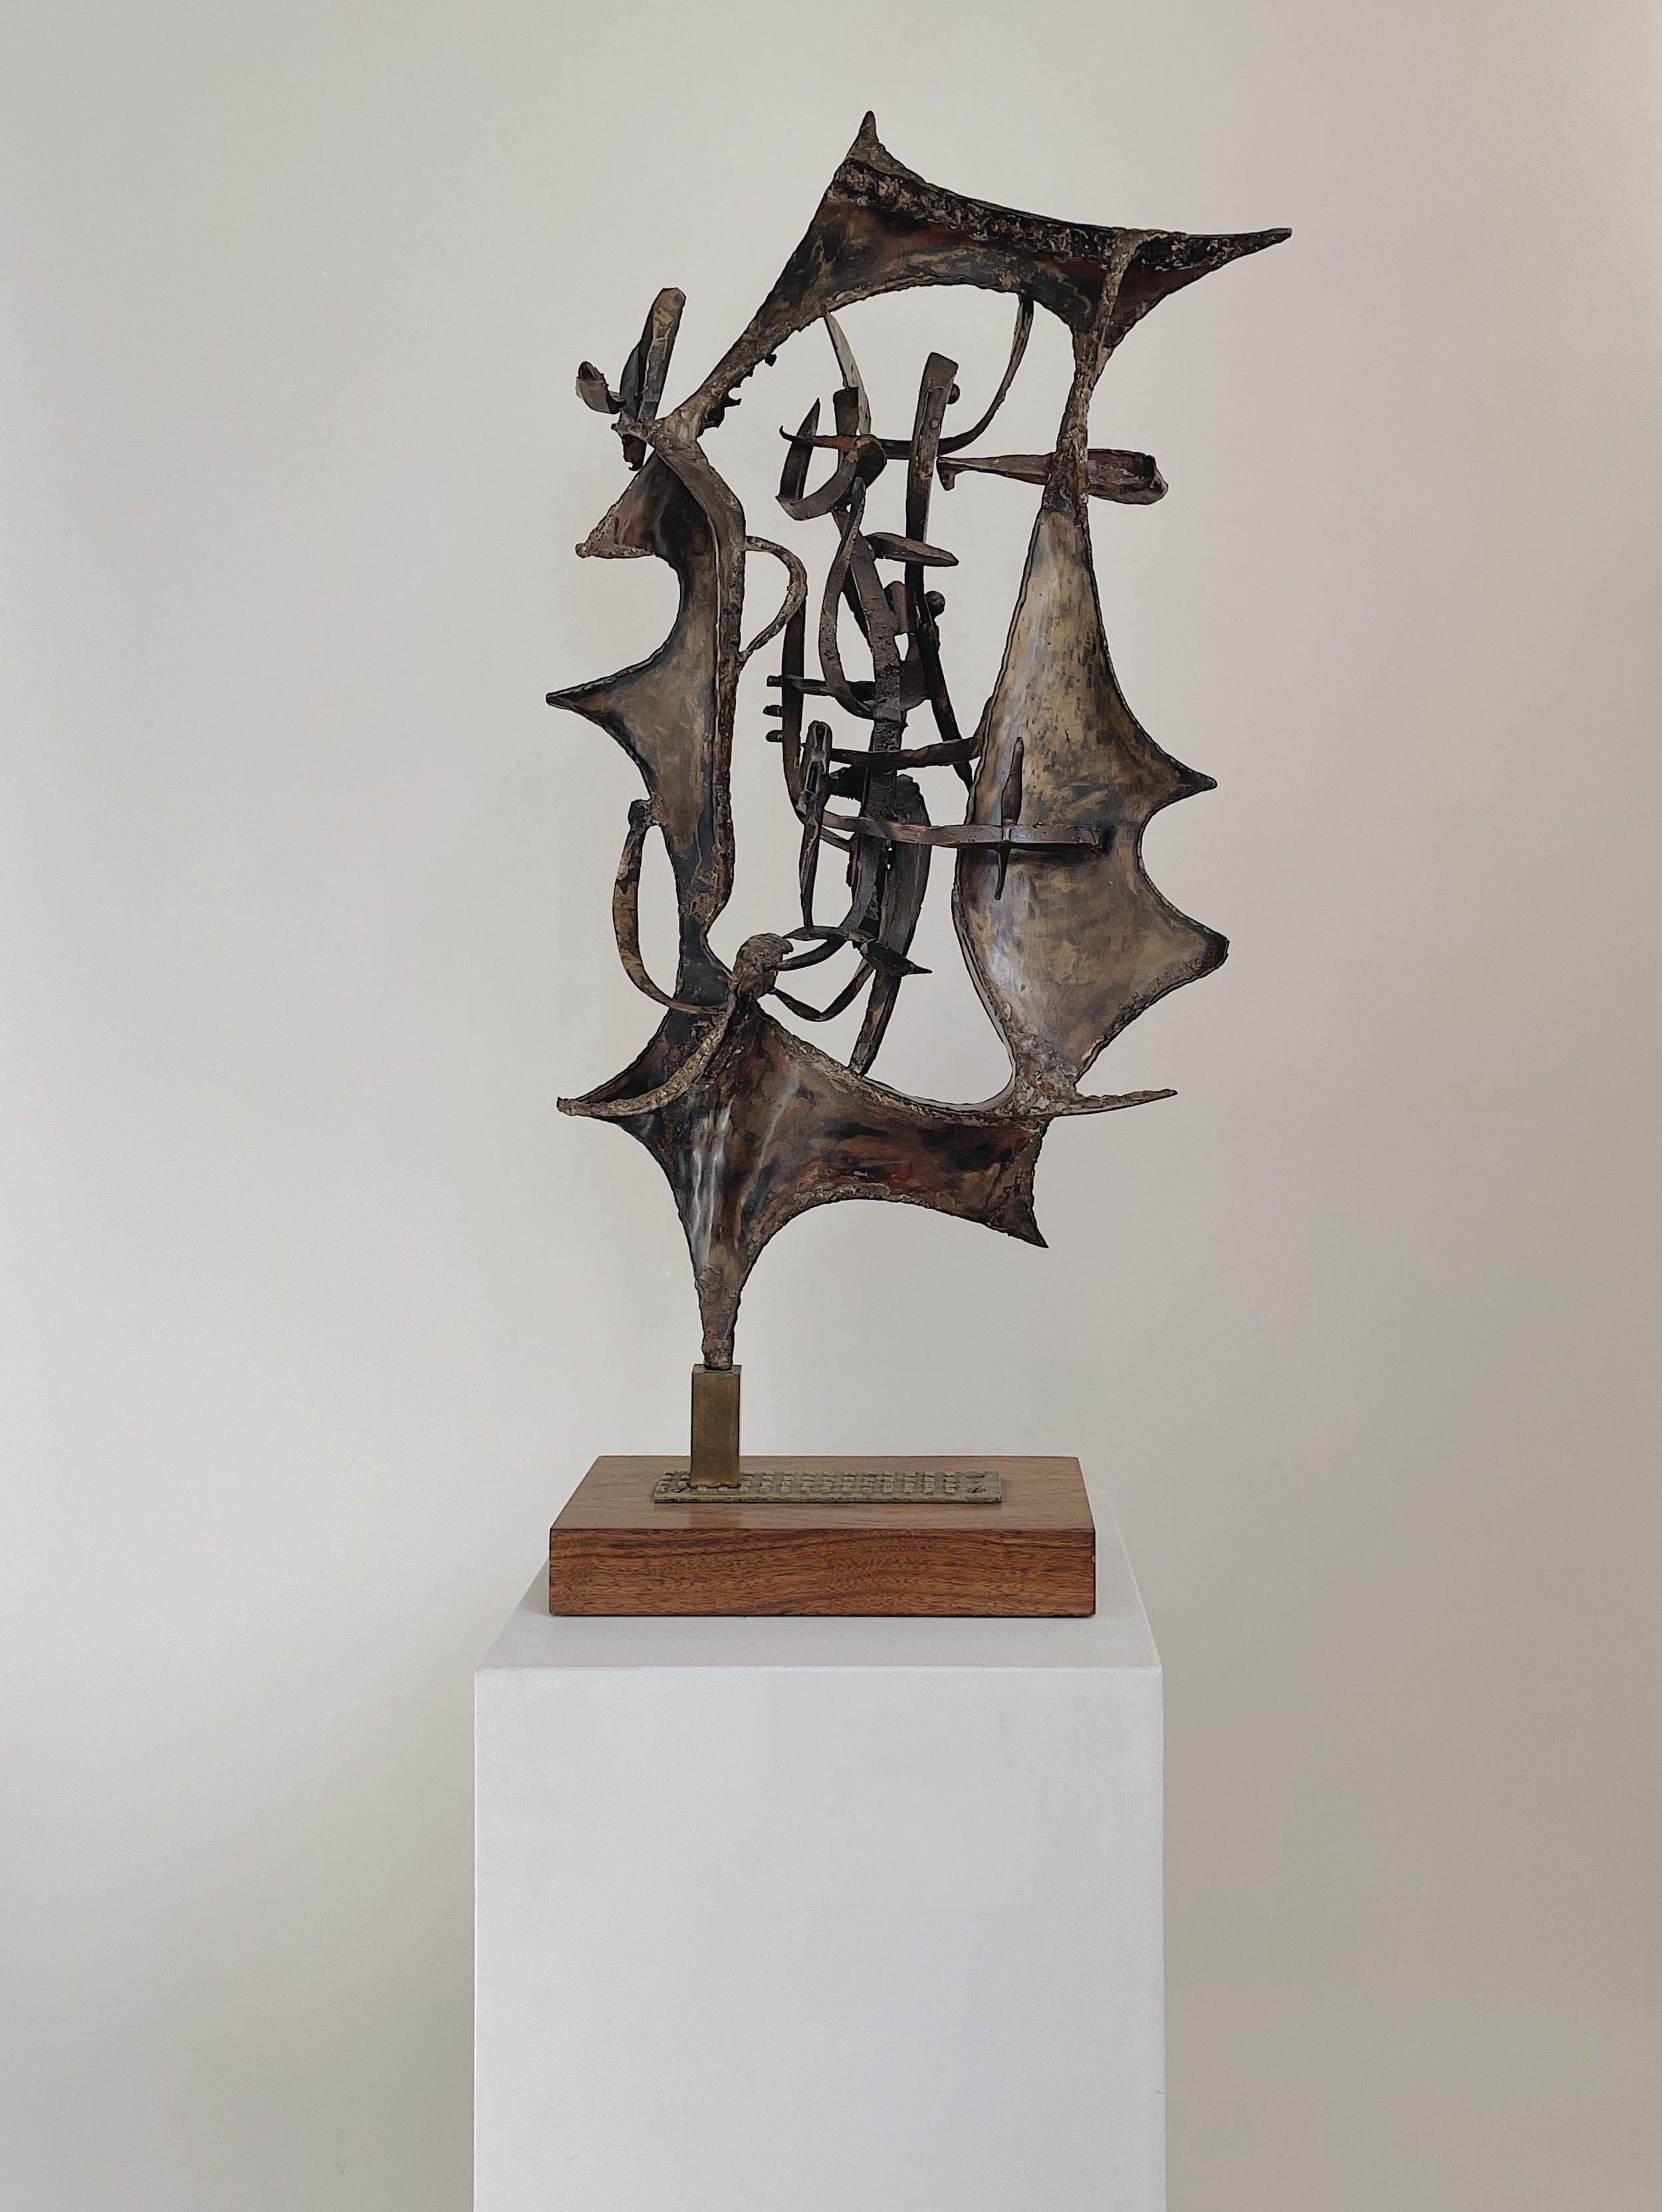 Philip H. Darling

Long Island, New York

années 1960-1970

Remarquable sculpture en bronze de l'artiste new-yorkais Philip H. Darling. Cette pièce repose dans un bloc de laiton qui est fixé à une plaque de laiton cloutée et fixé à une base en